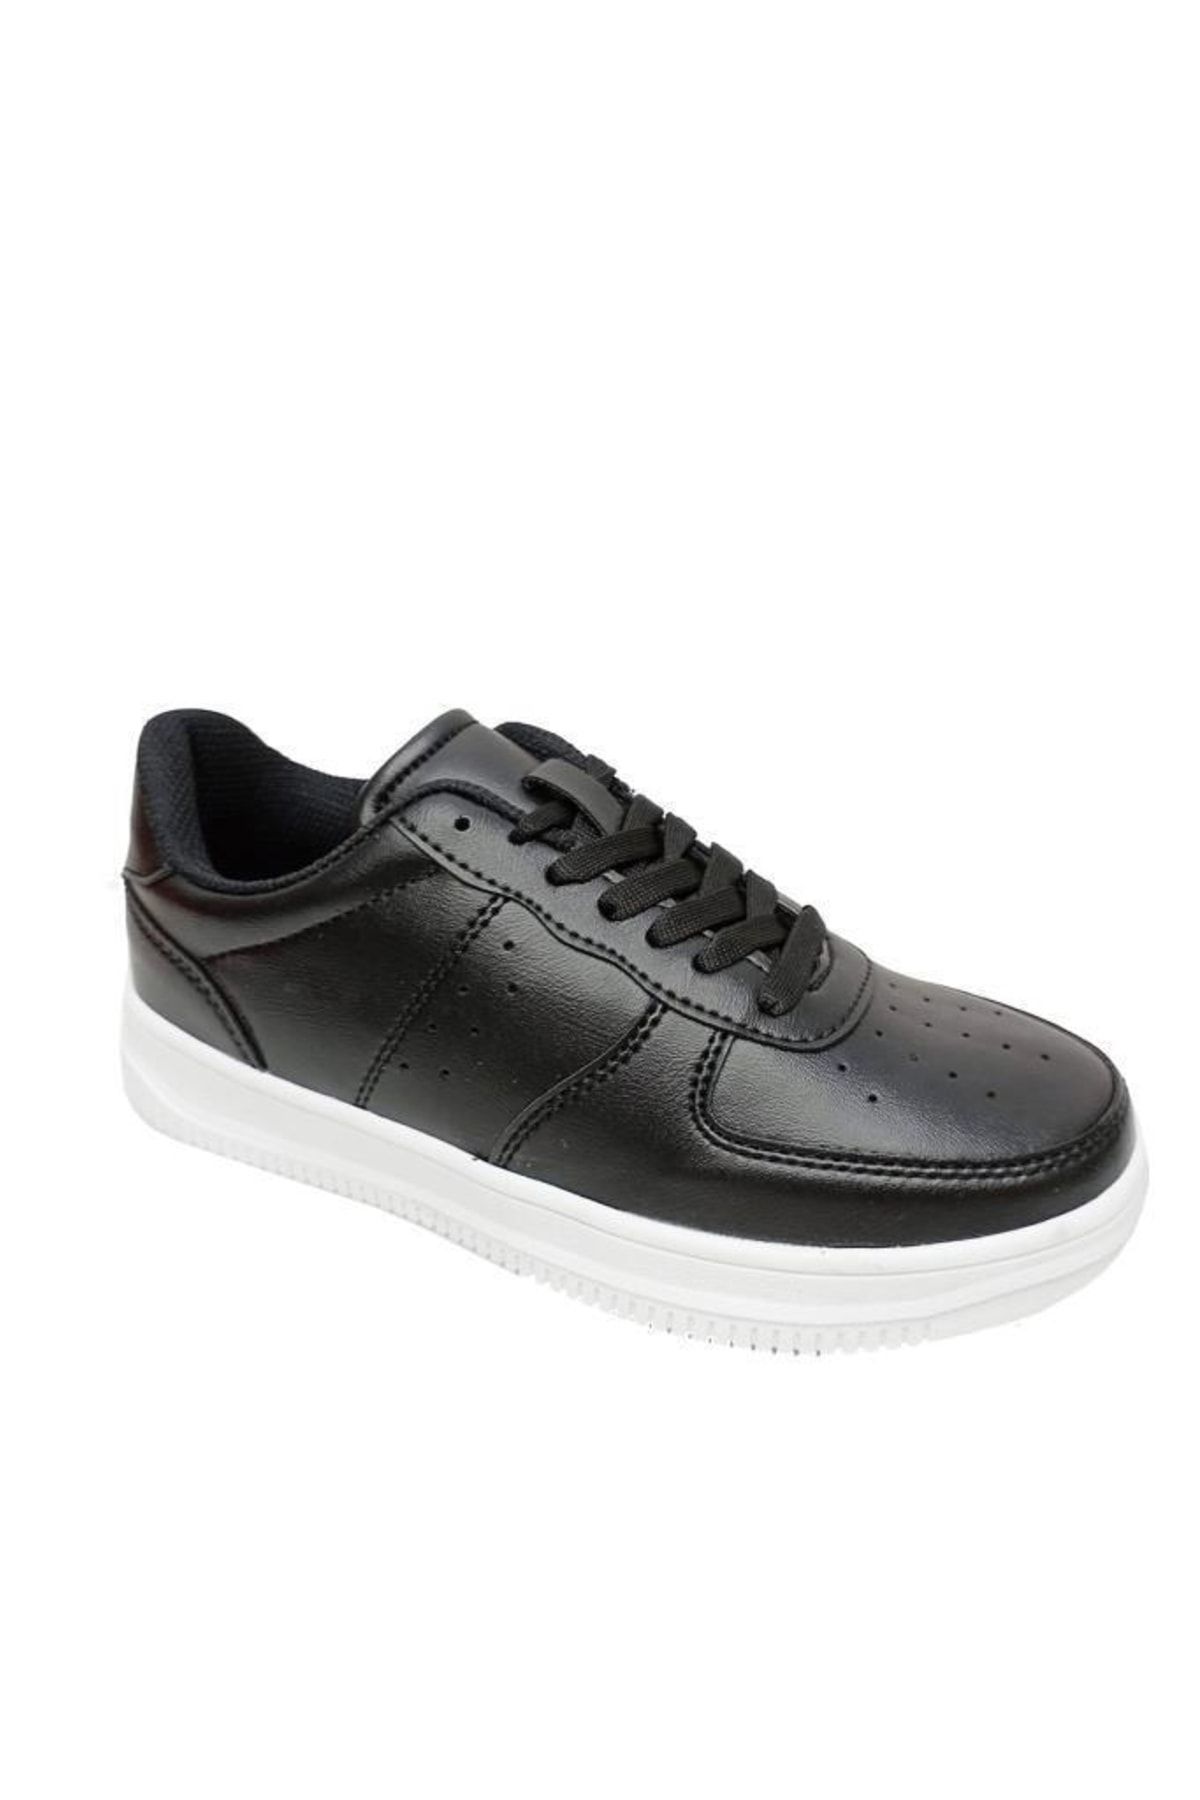 Zigana 002-23 Deri Sneakers Ayakkabı 36-40 Siyah Beyaz